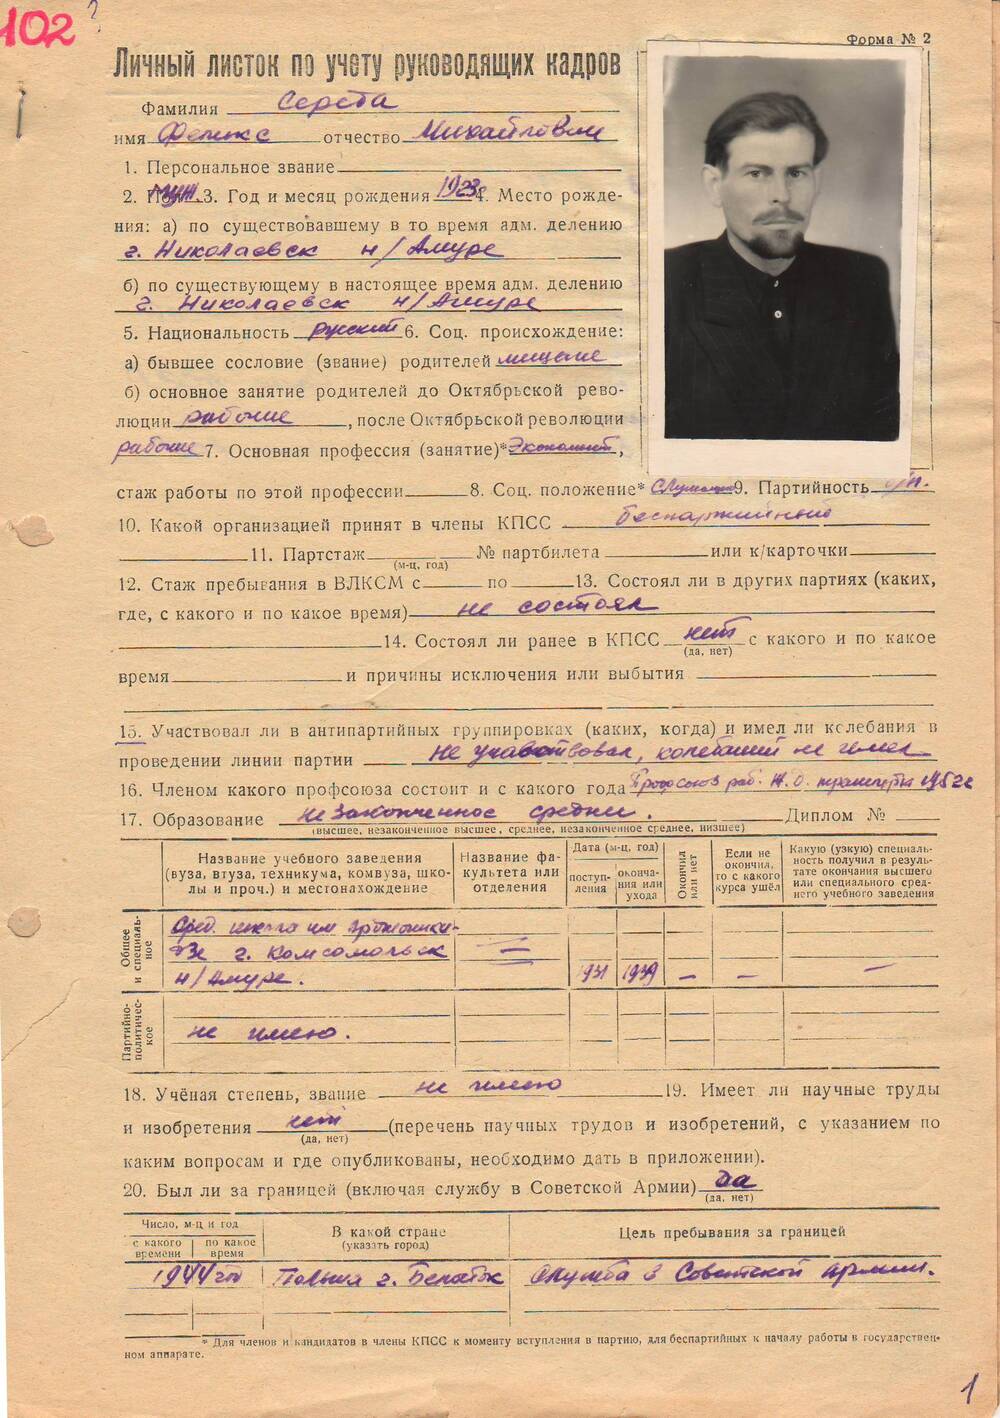 Личный листок по учету руководящих кадров Середа Феликс Михайлович